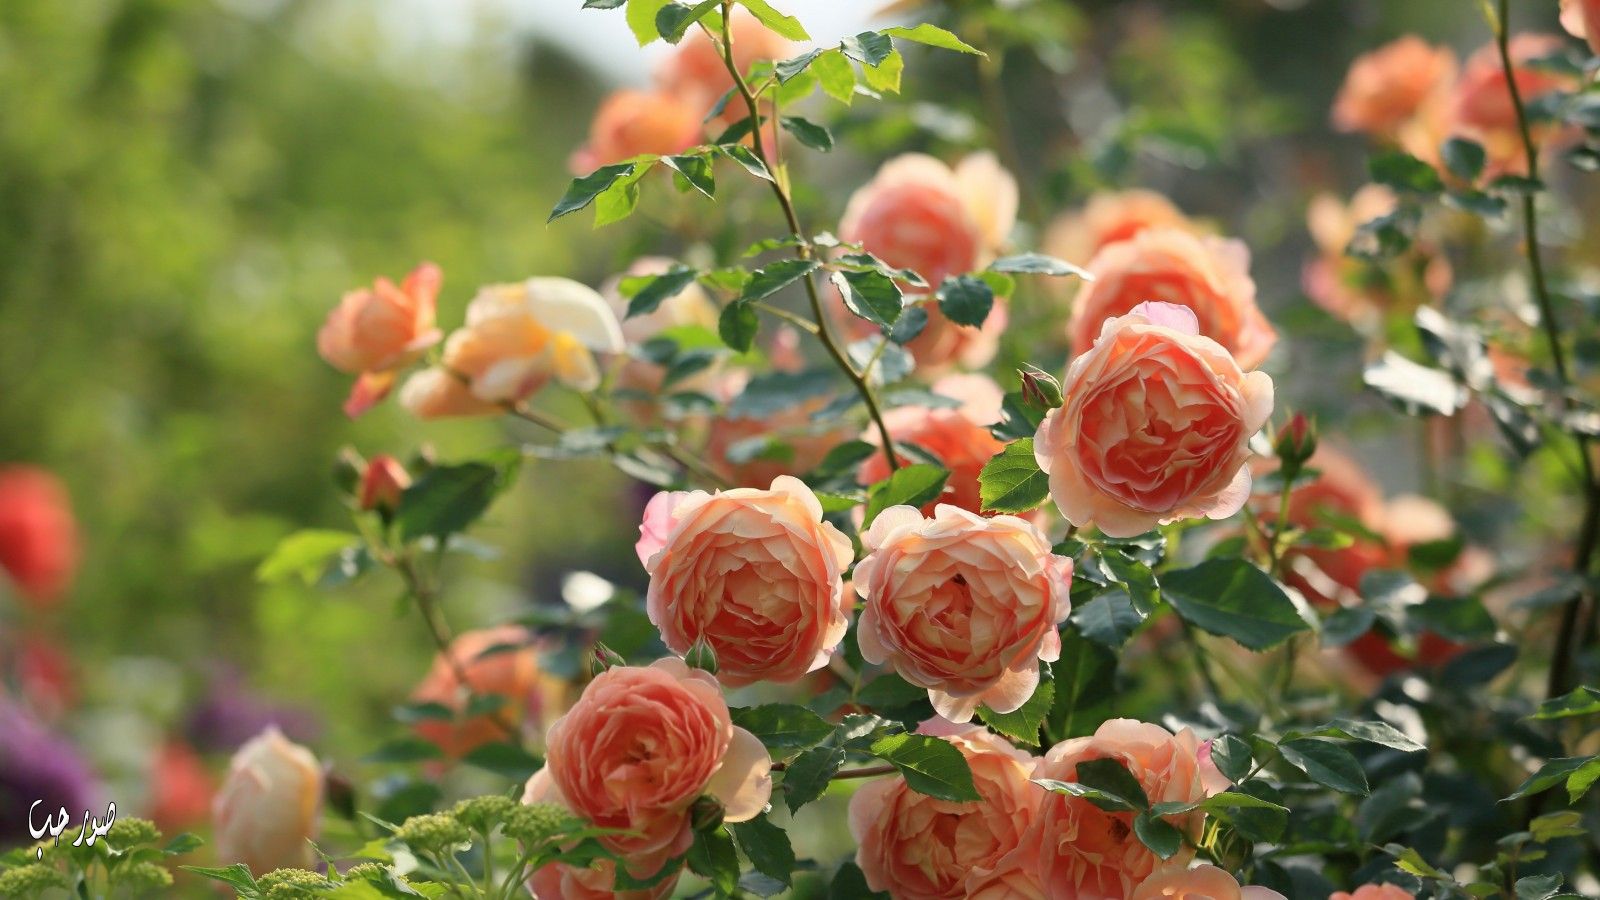 خلفيات ورود طبيعية روعه 2017 اجمل ألوان الورد الطبيعي صور ورد جوري